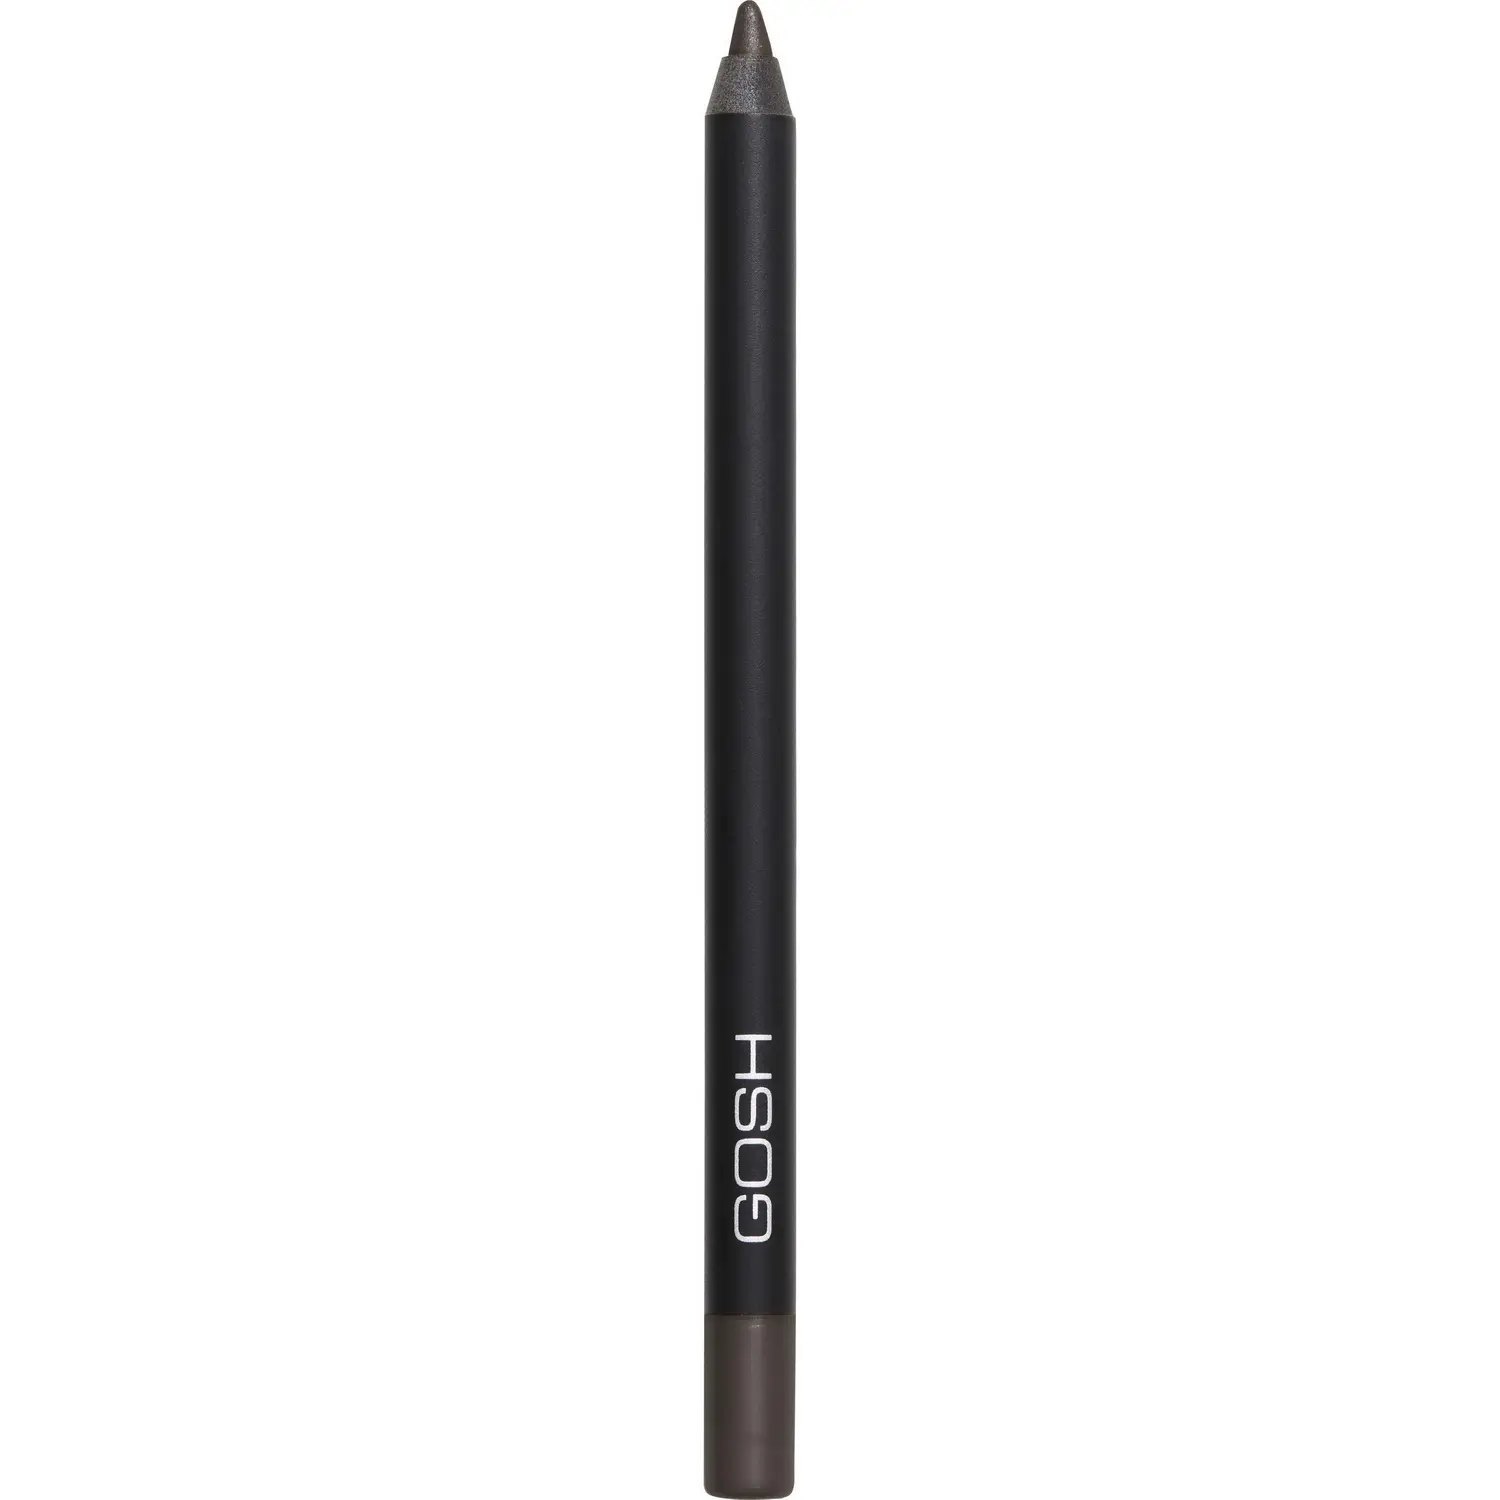 Карандаш для глаз Gosh Velvet Touch Eye Pencil водостойкий тон 017 (Rebellious brown) 1.2 г - фото 1